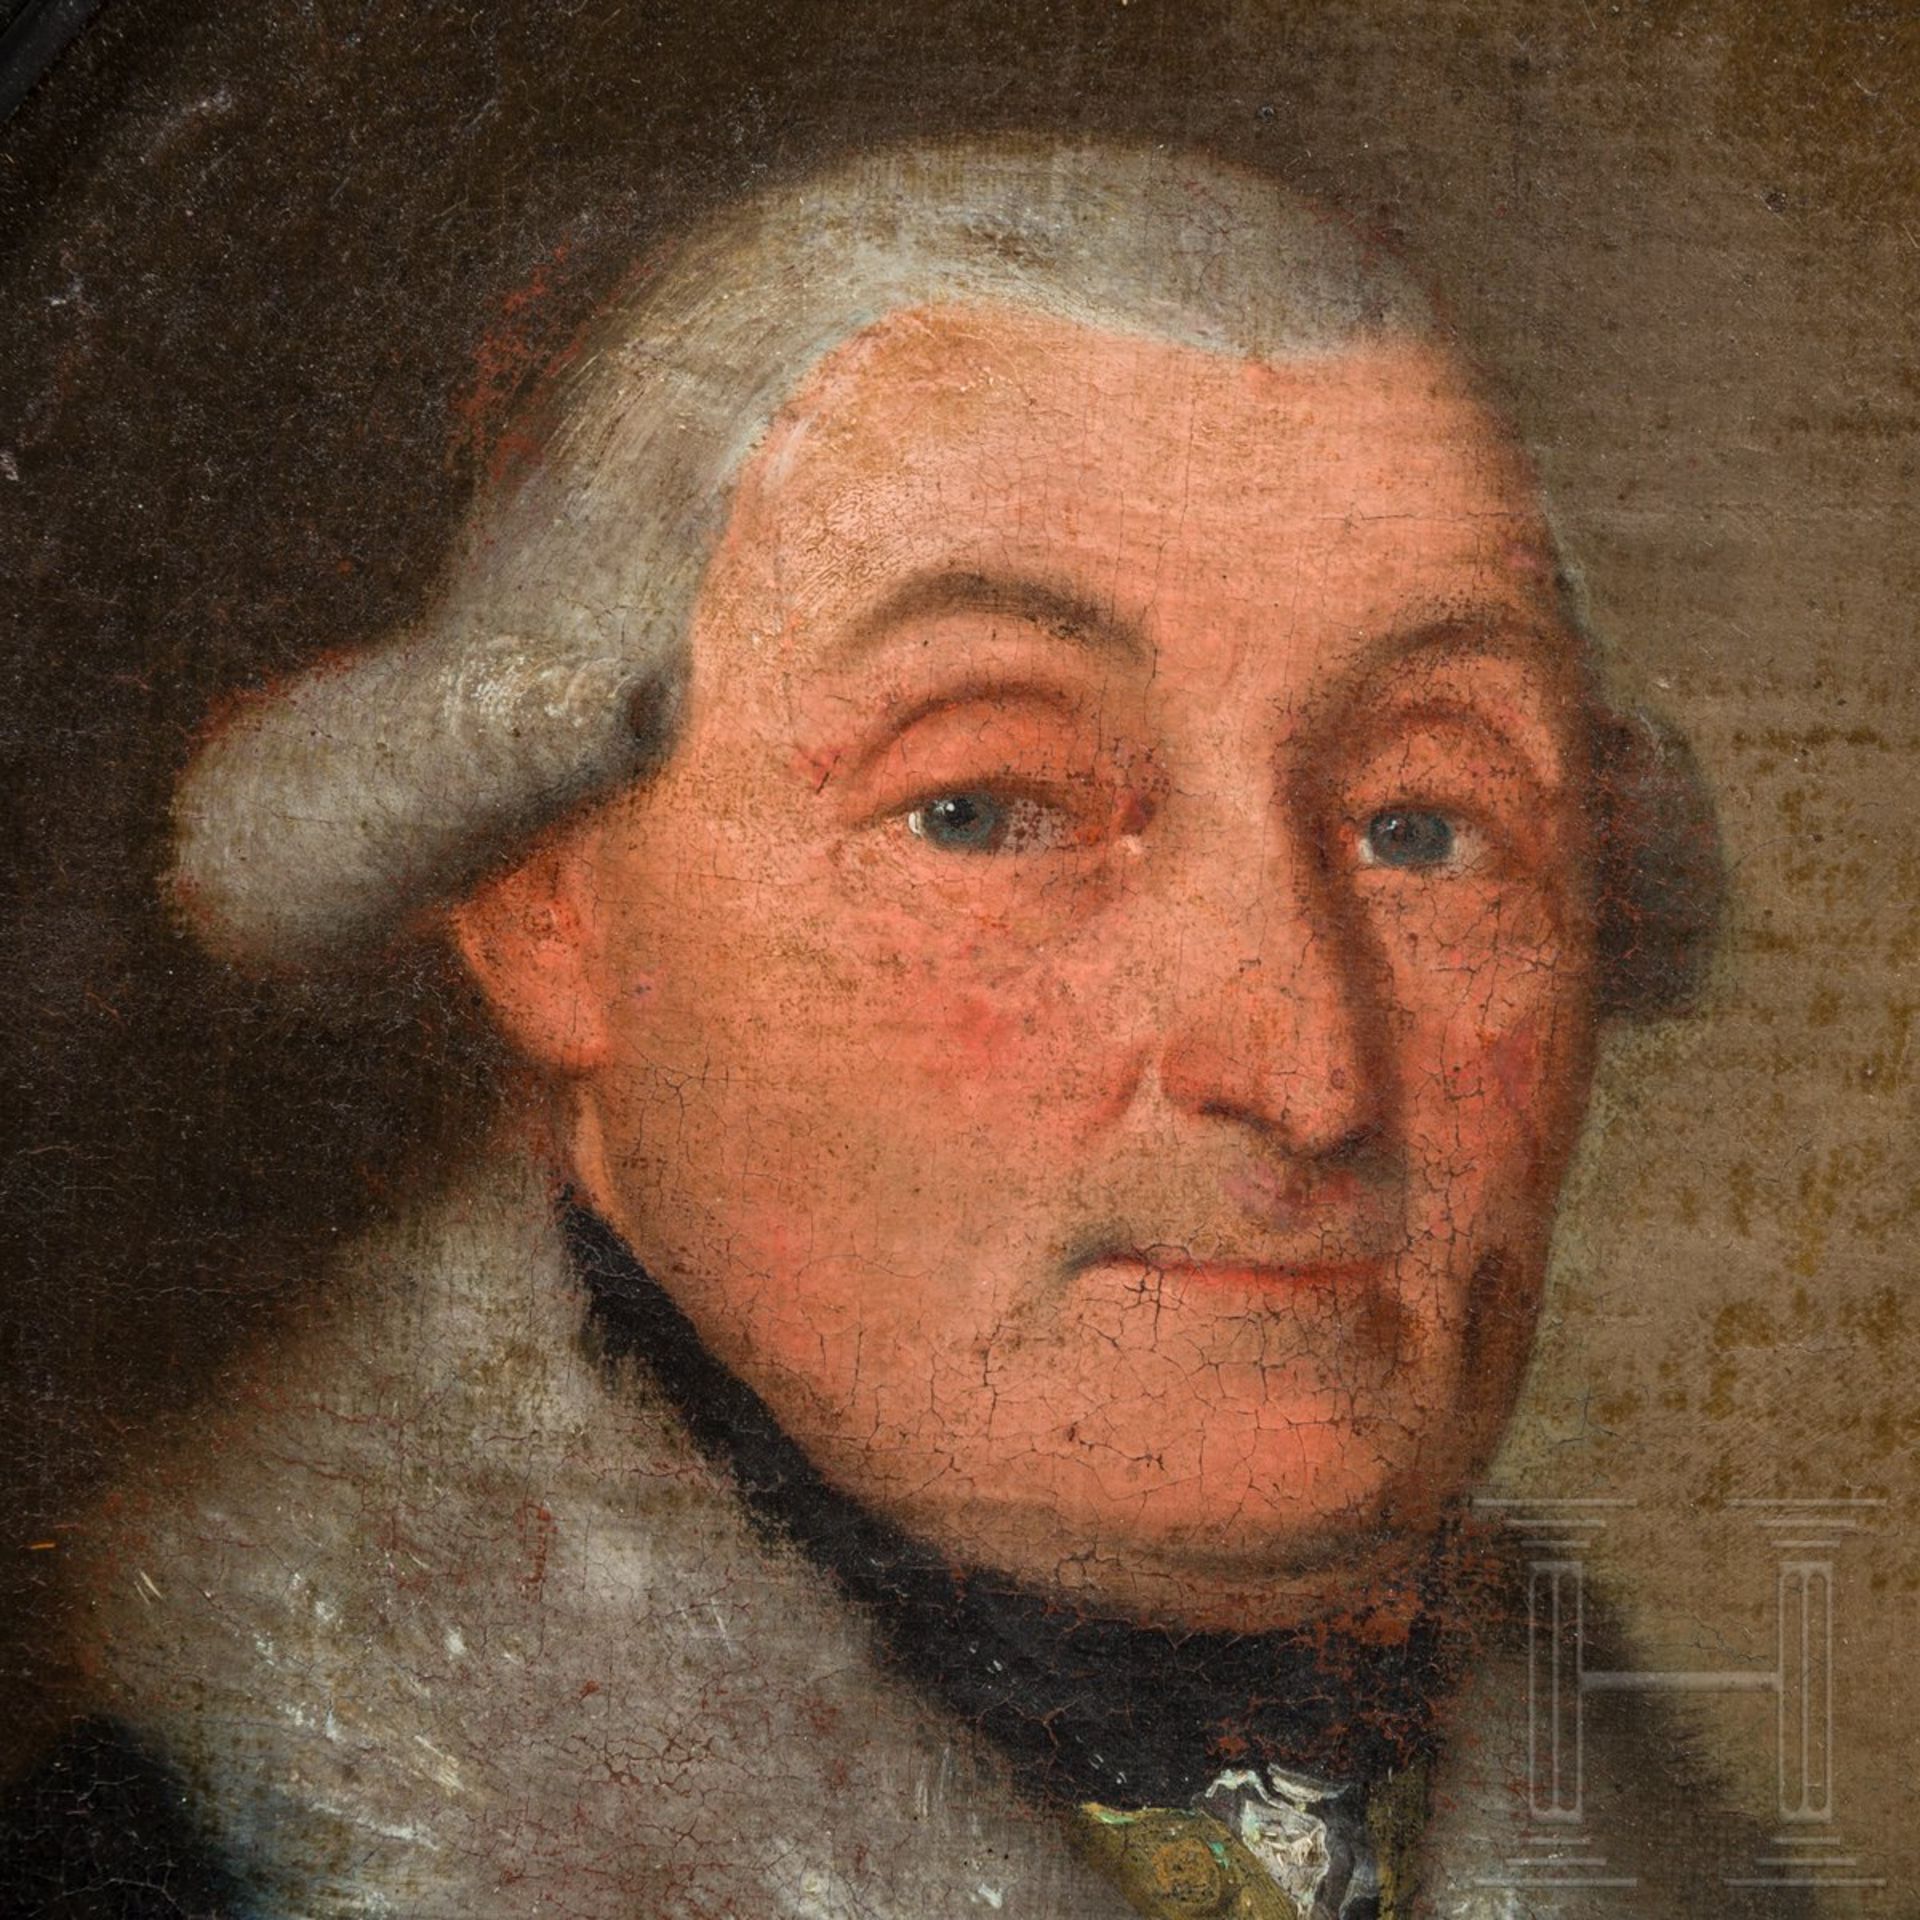 Bildnisse des preußischen Generals von Dalwig und seiner Ehefrau, um 1780 - Bild 3 aus 6